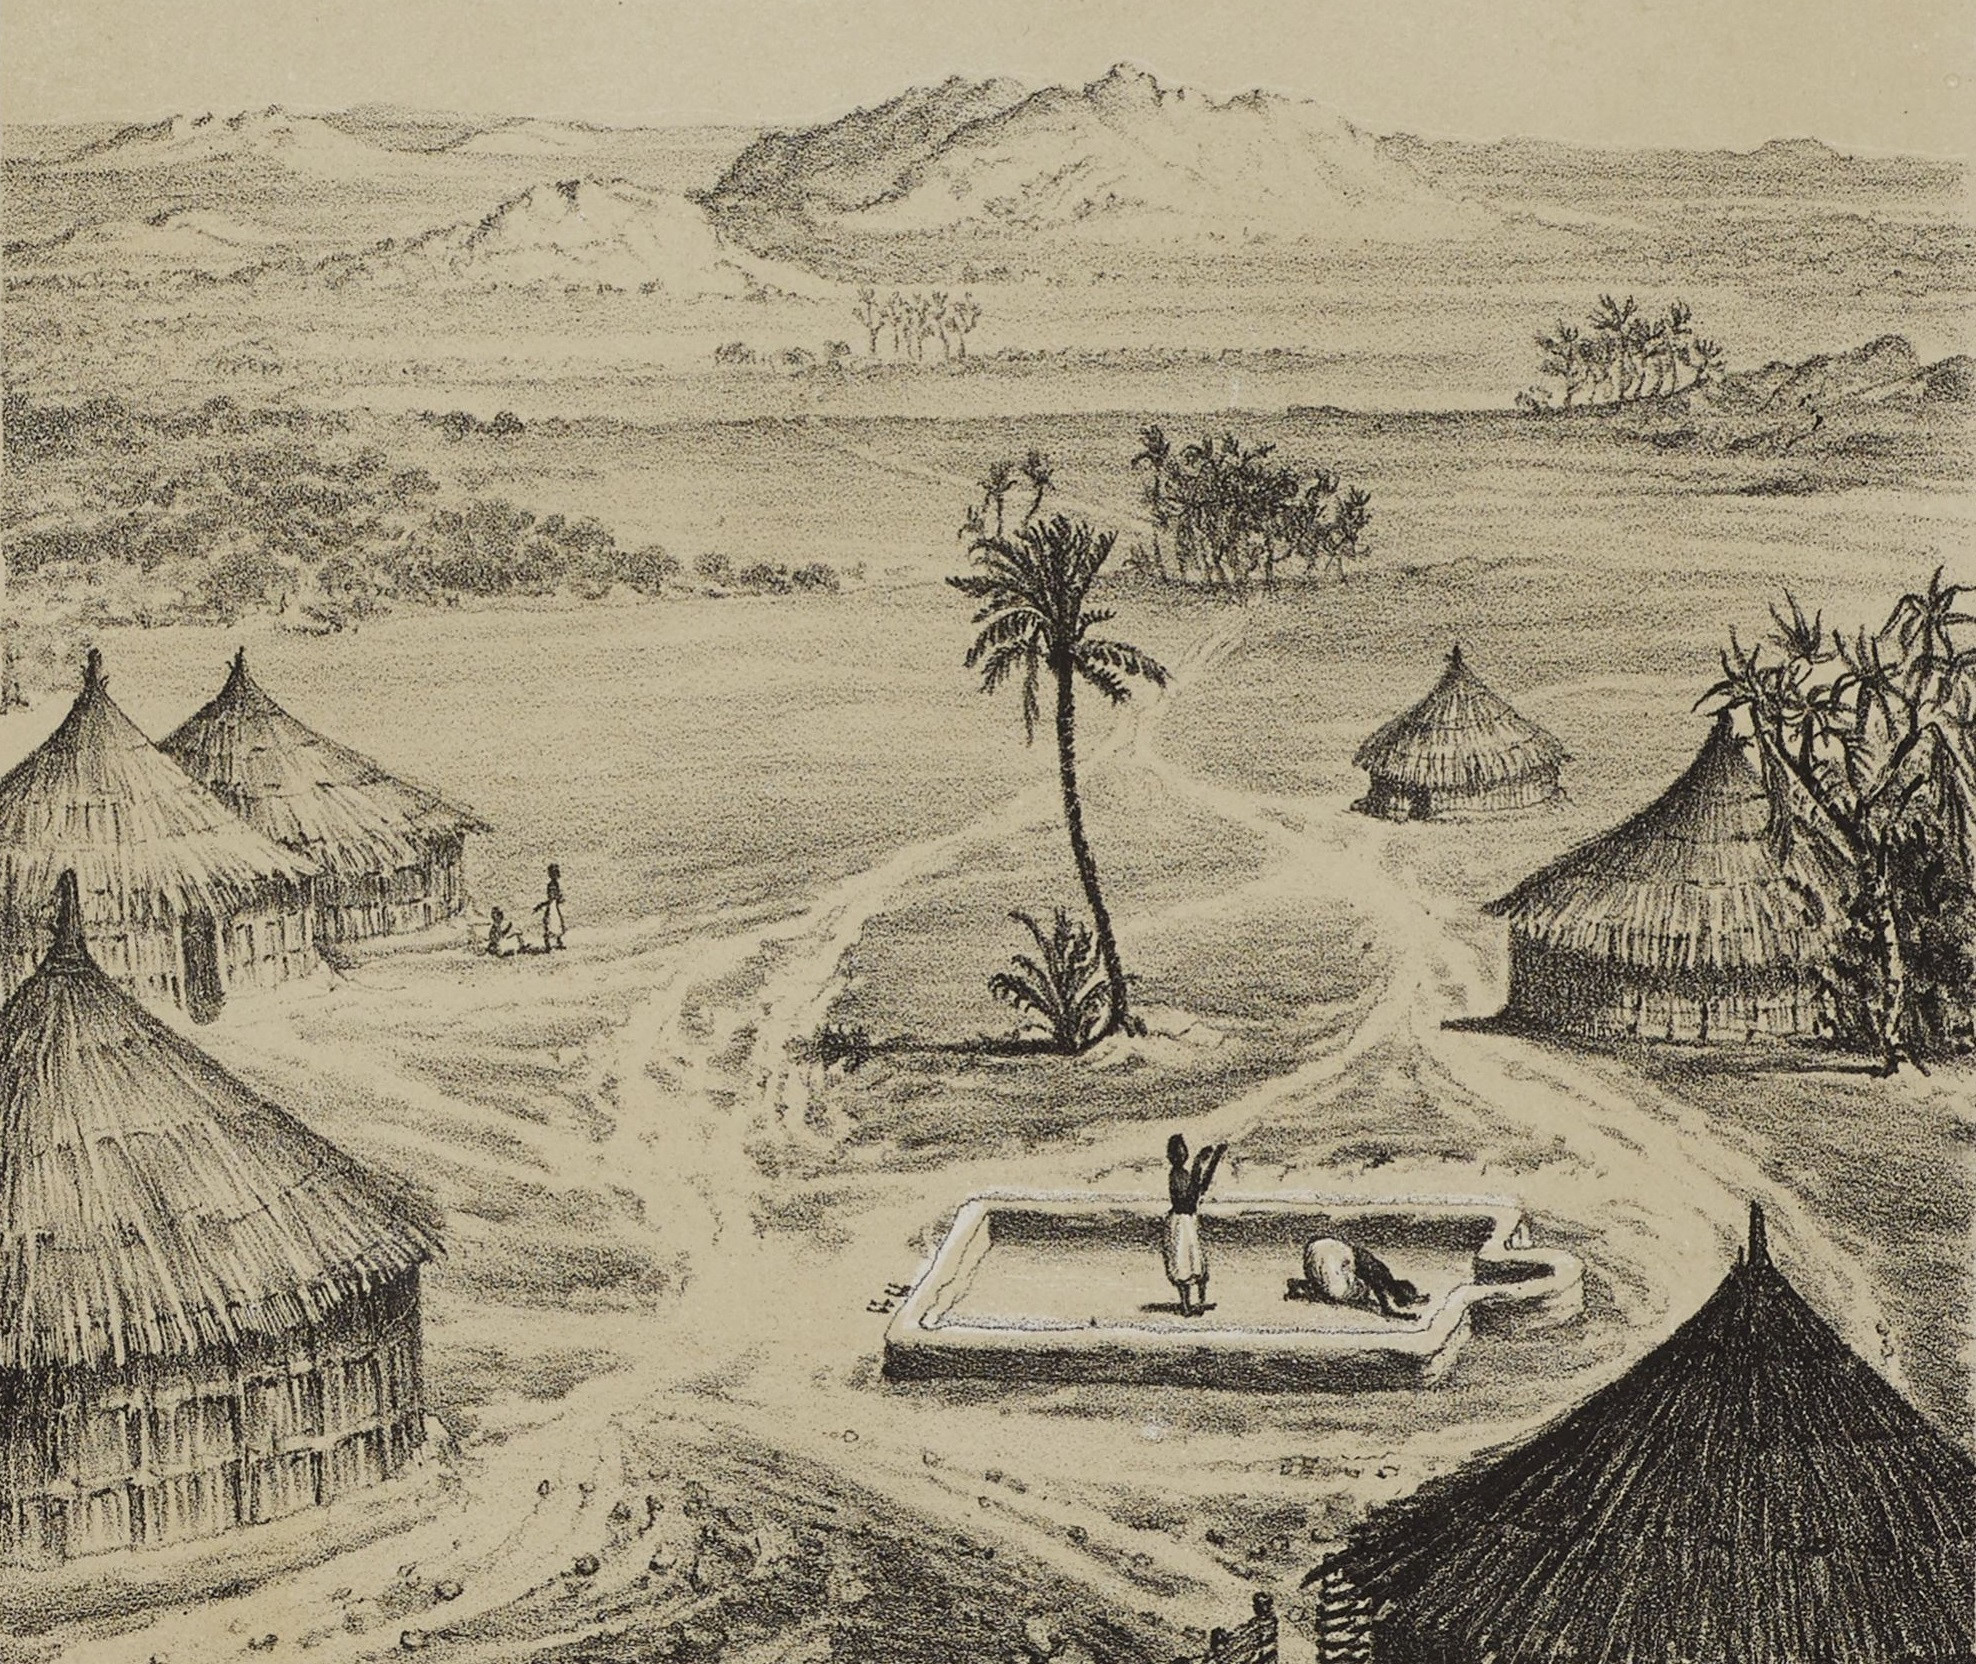 Evliya Çelebi'nin Nil'in kaynağının peşindeki ilk önemli durağı, Sudan'ın eski başkenti Sennar olur.